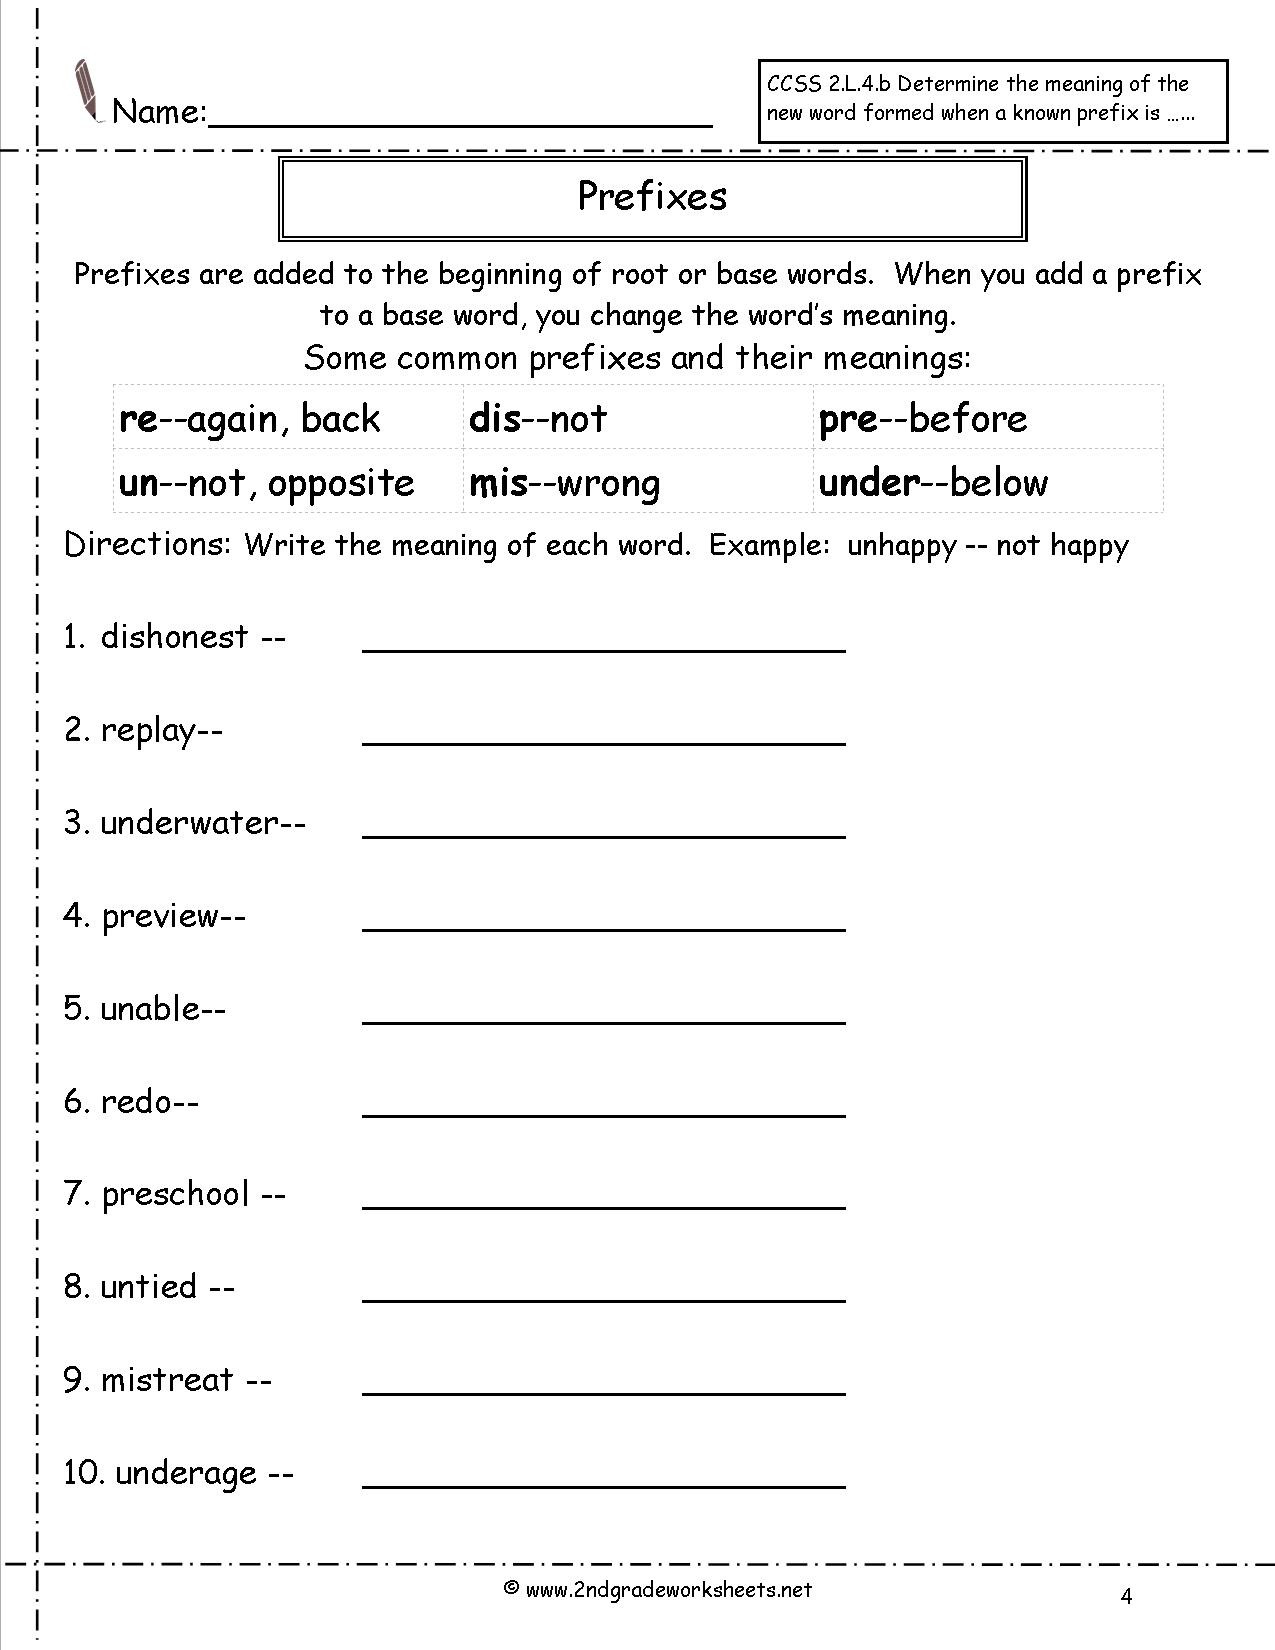 Prefix Worksheets 4th Grade Second Grade Prefixes Worksheets